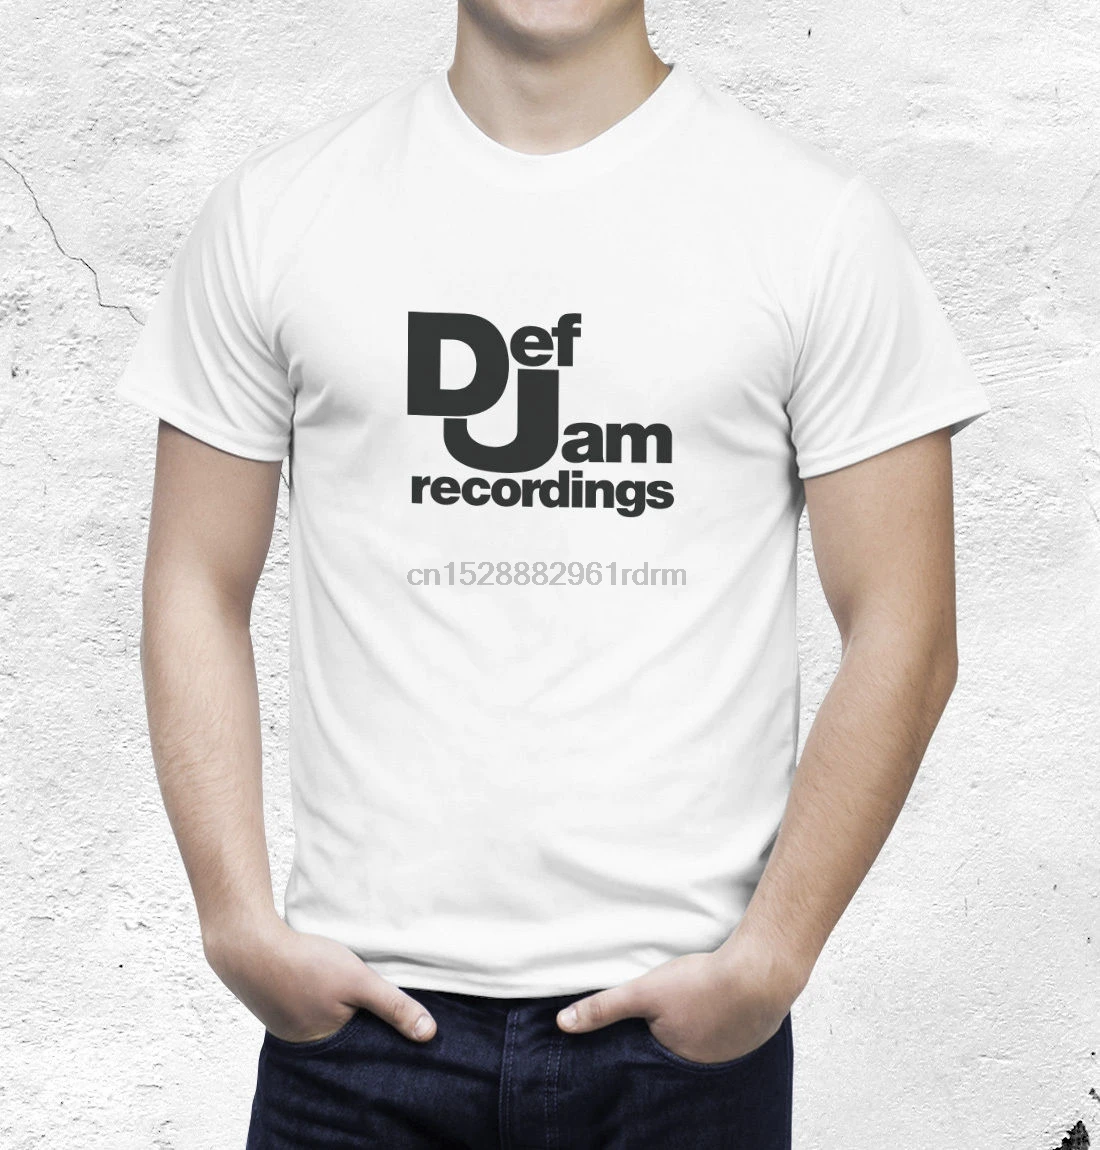 Def jam Recordings футболка 2019 модная из 100% хлопка топы оптовая продажа летняя с круглым